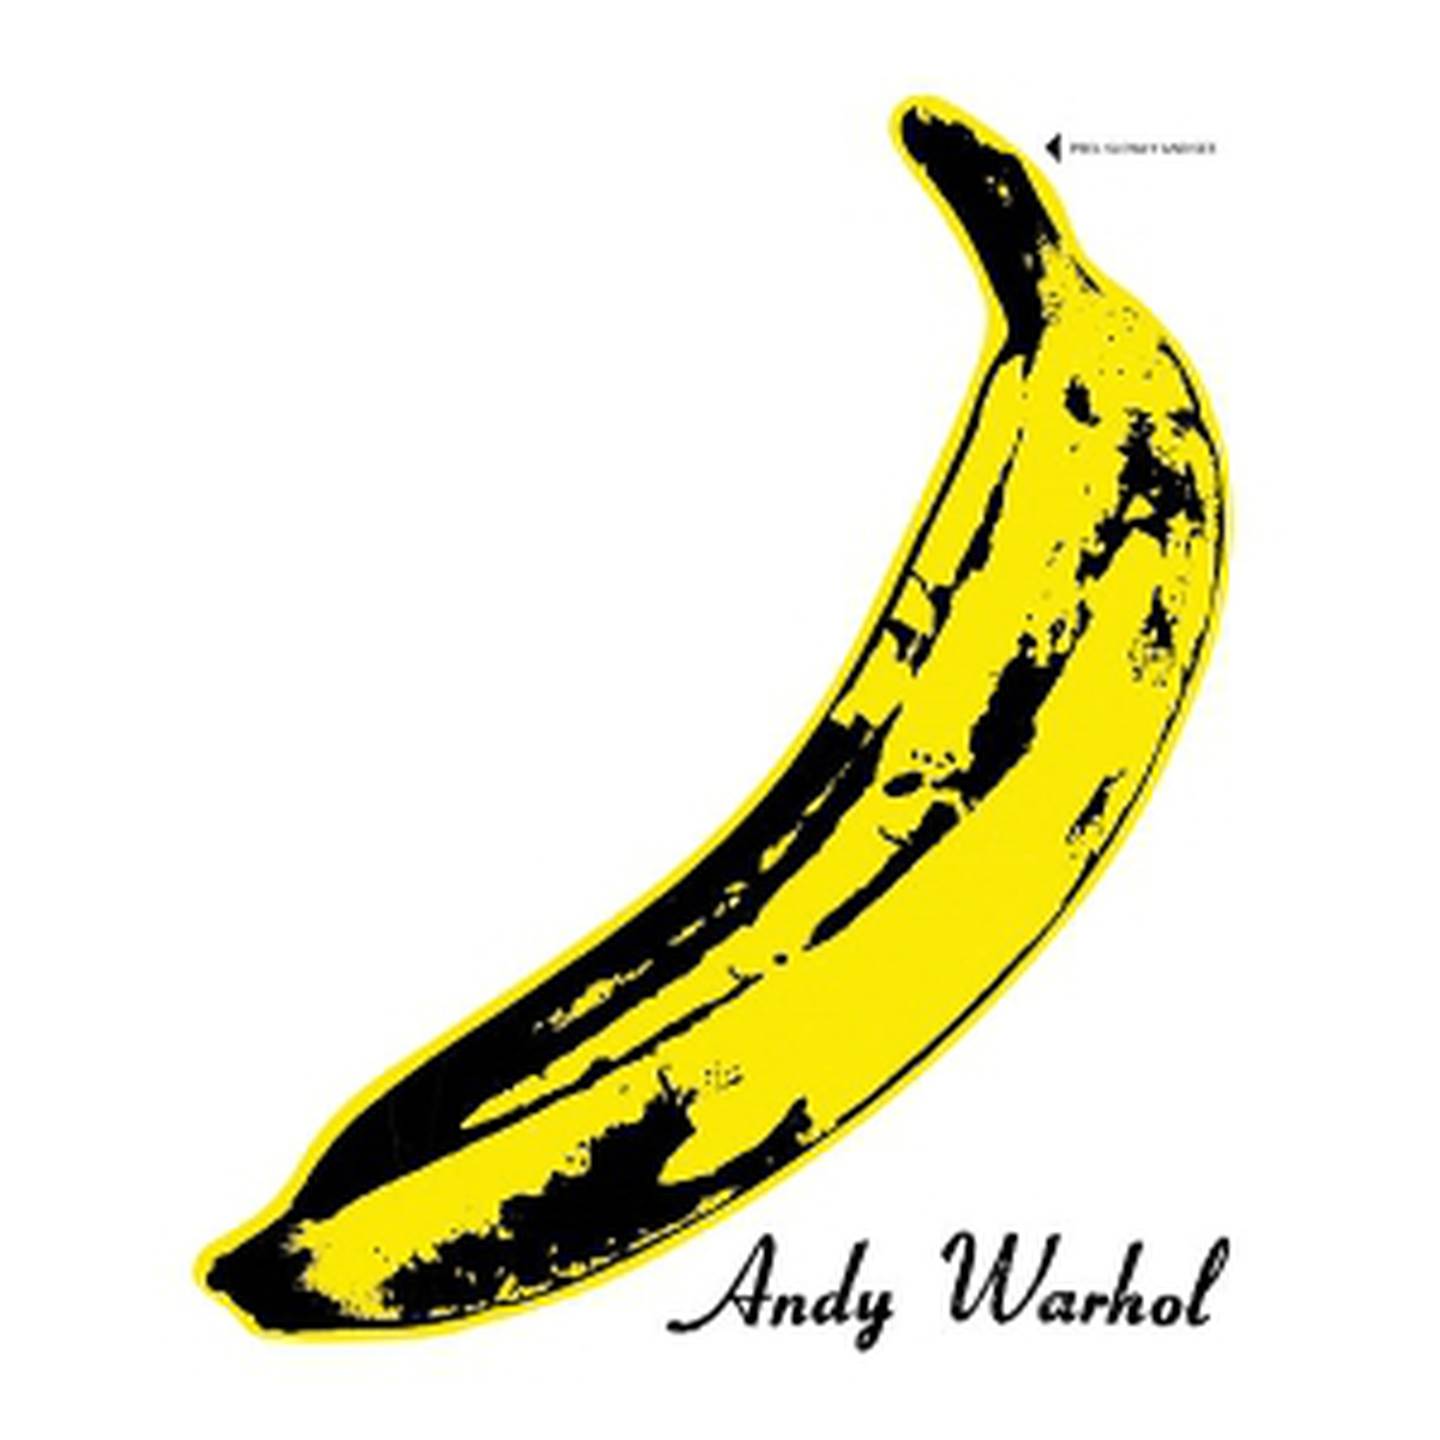 Kunstneriske uttrykk i popmusikken ble først kjent med Velvet Undergrounds LP-covere signert Andy Warhol. 